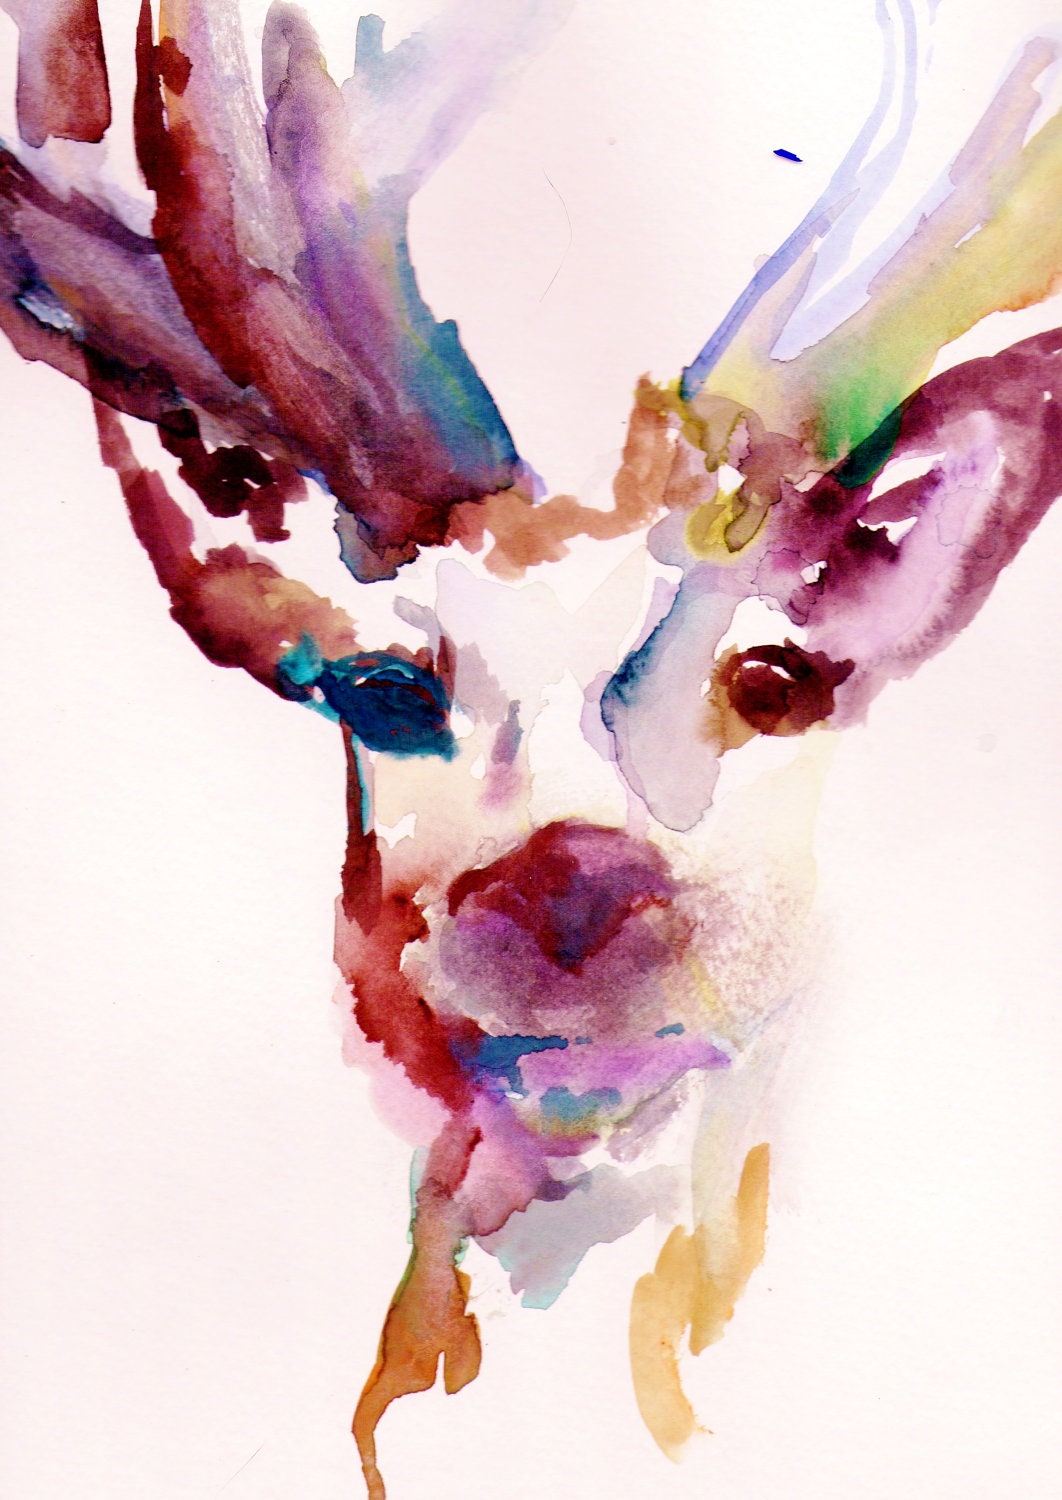 Print of Original Watercolor Painting, Titled: "Deer" by Jessica Buhman 11 x 14 Pink Purple Yellow Blue Brown Black Reindeer